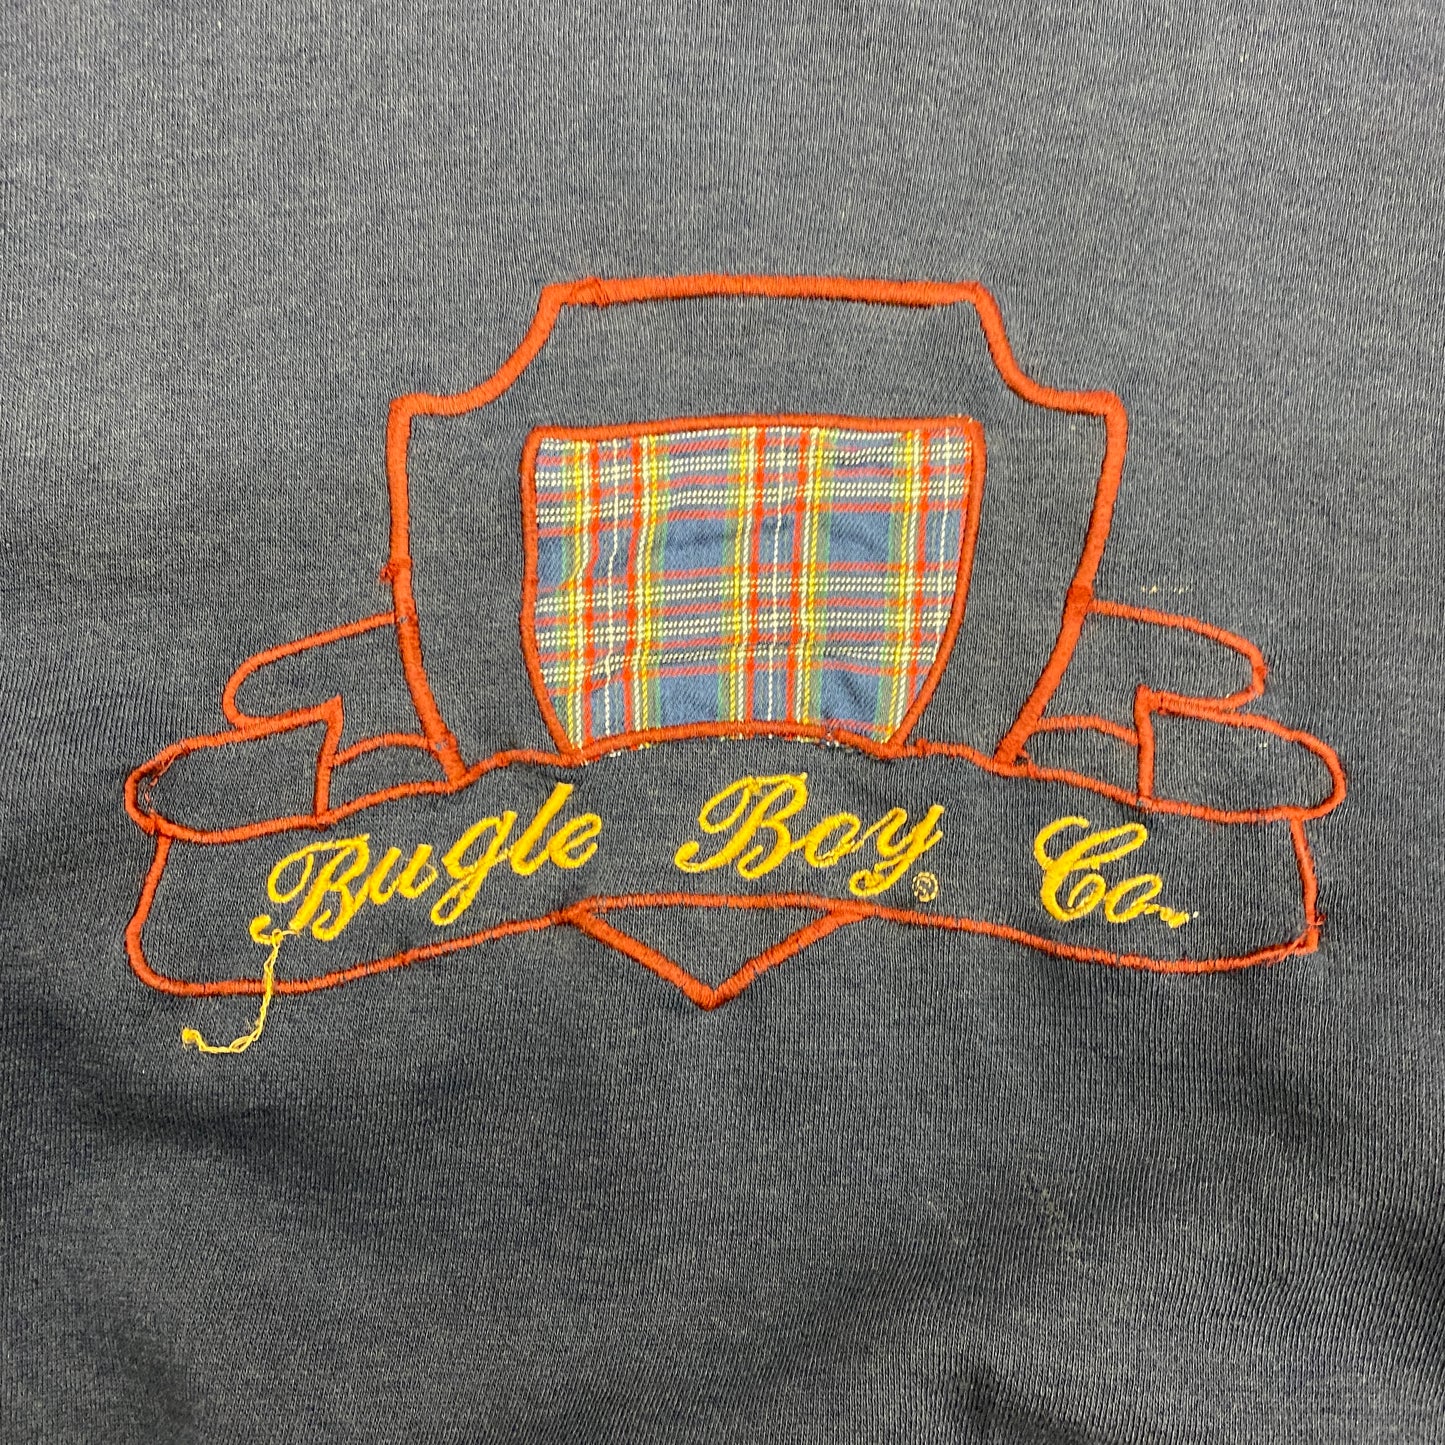 Vintage 90s Bugle Boy Co. Embroidered Logo Sweatshirt - Size Large